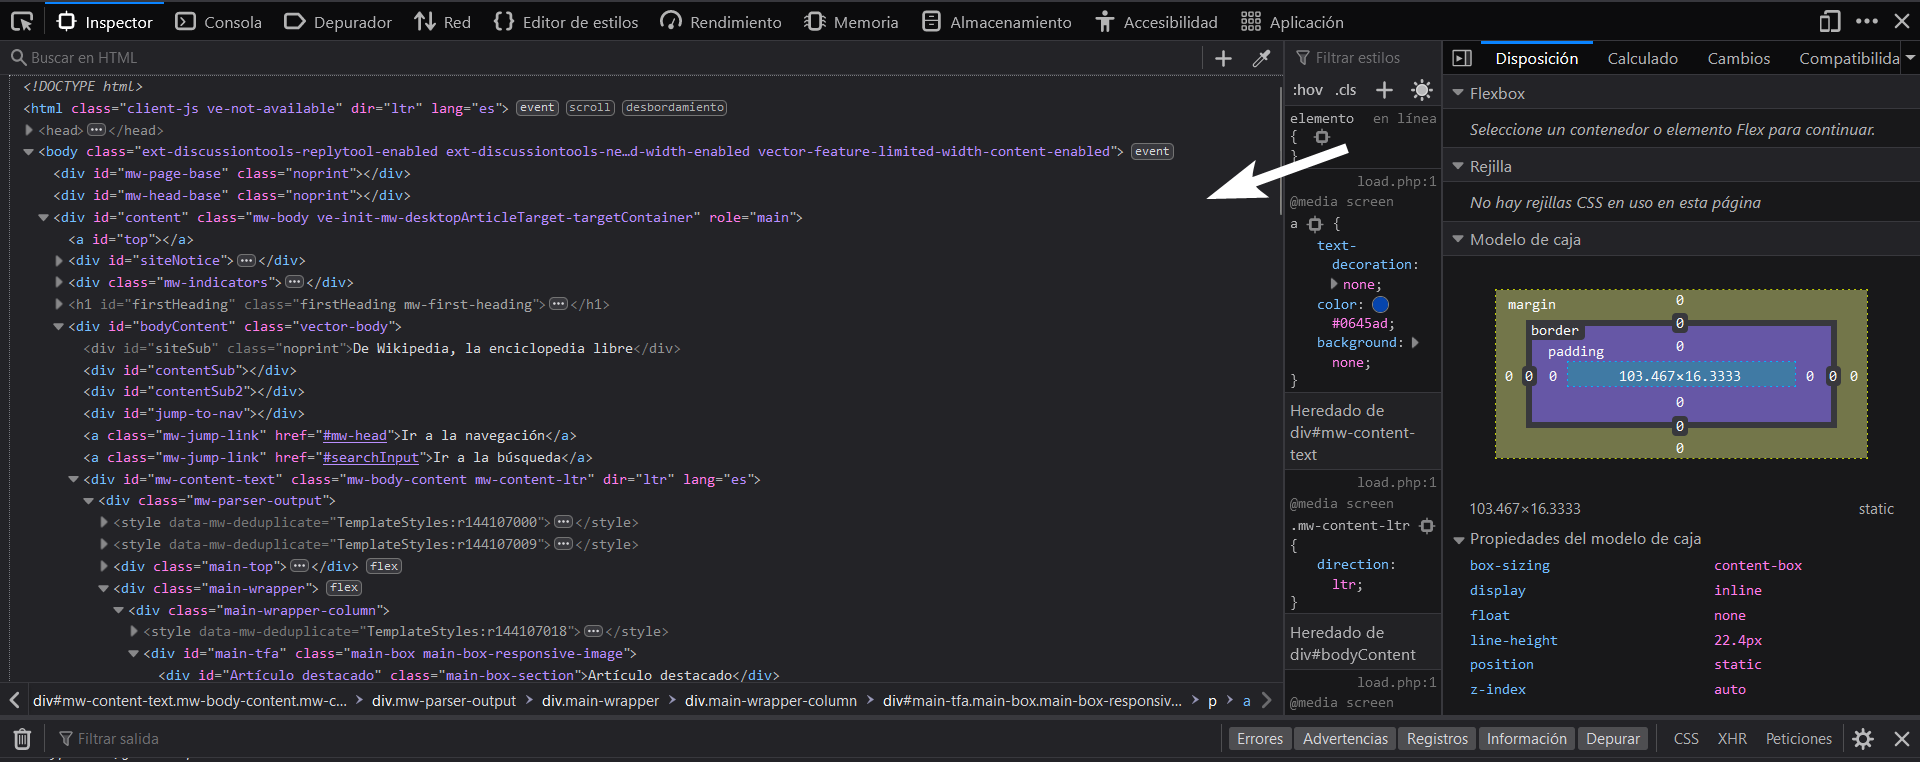 Imagen que muestra el código HTML de una página web.